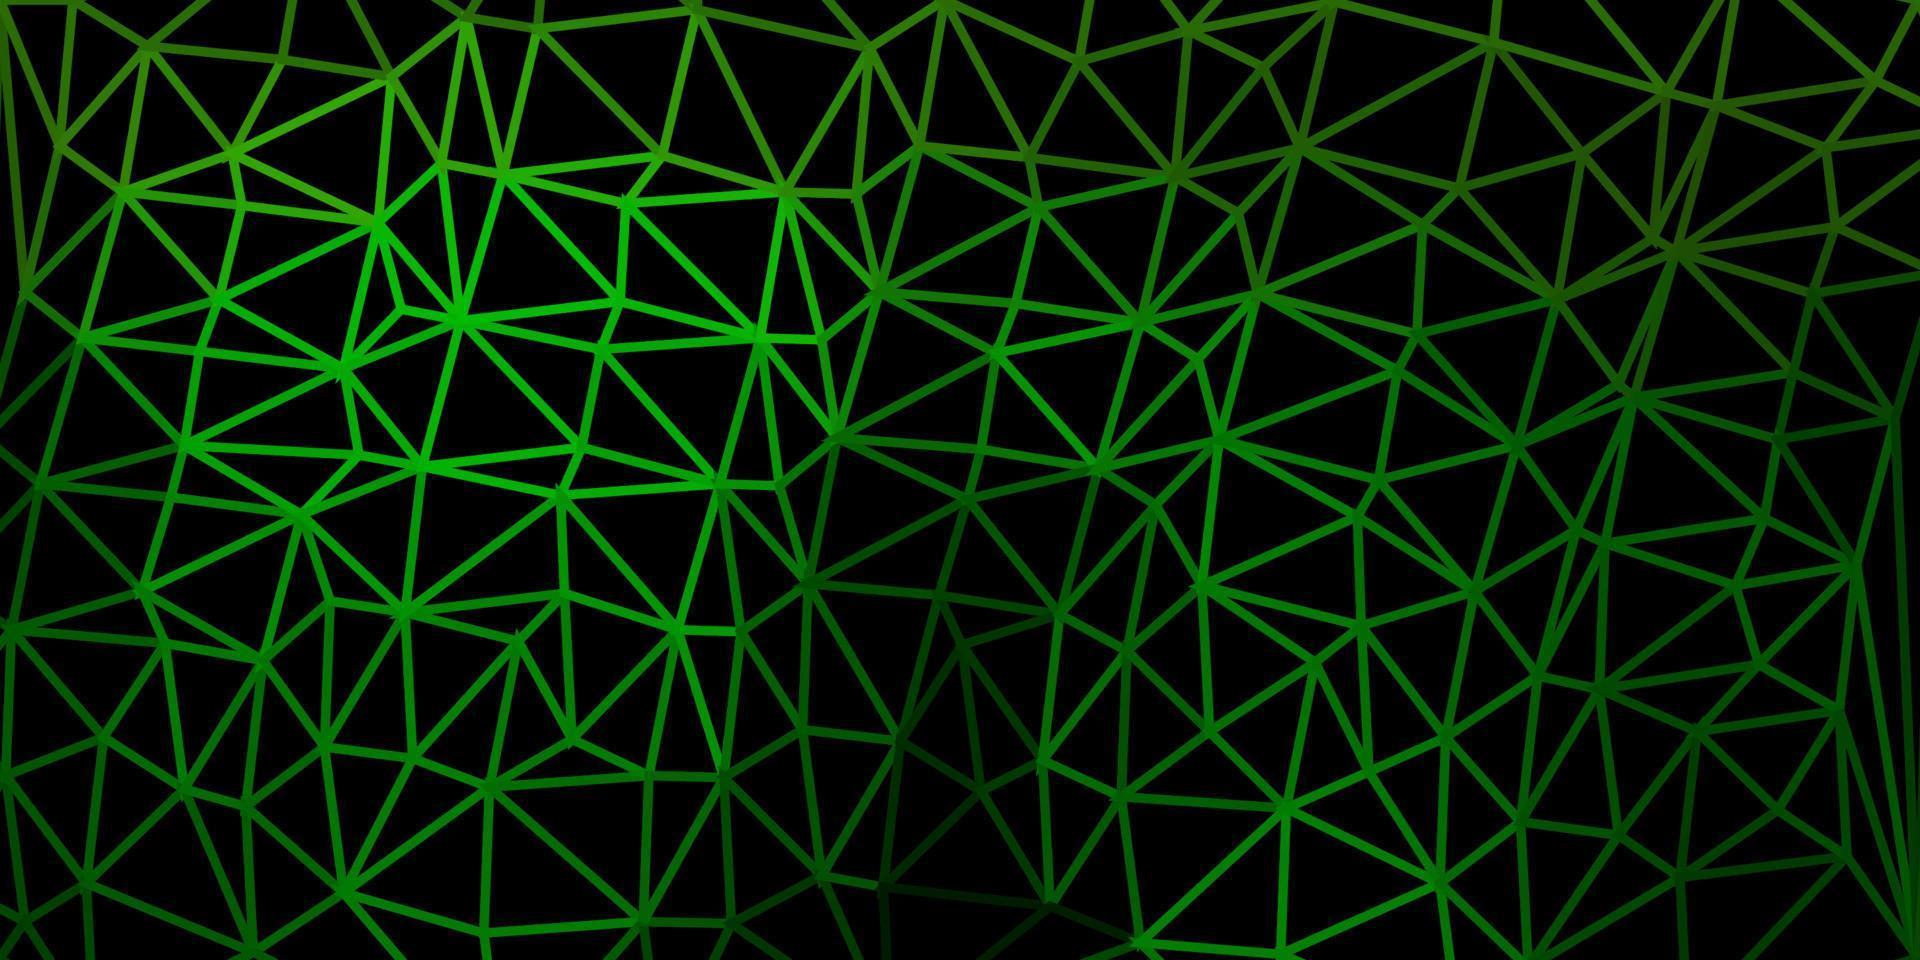 disegno poligonale geometrico di vettore verde scuro, giallo.